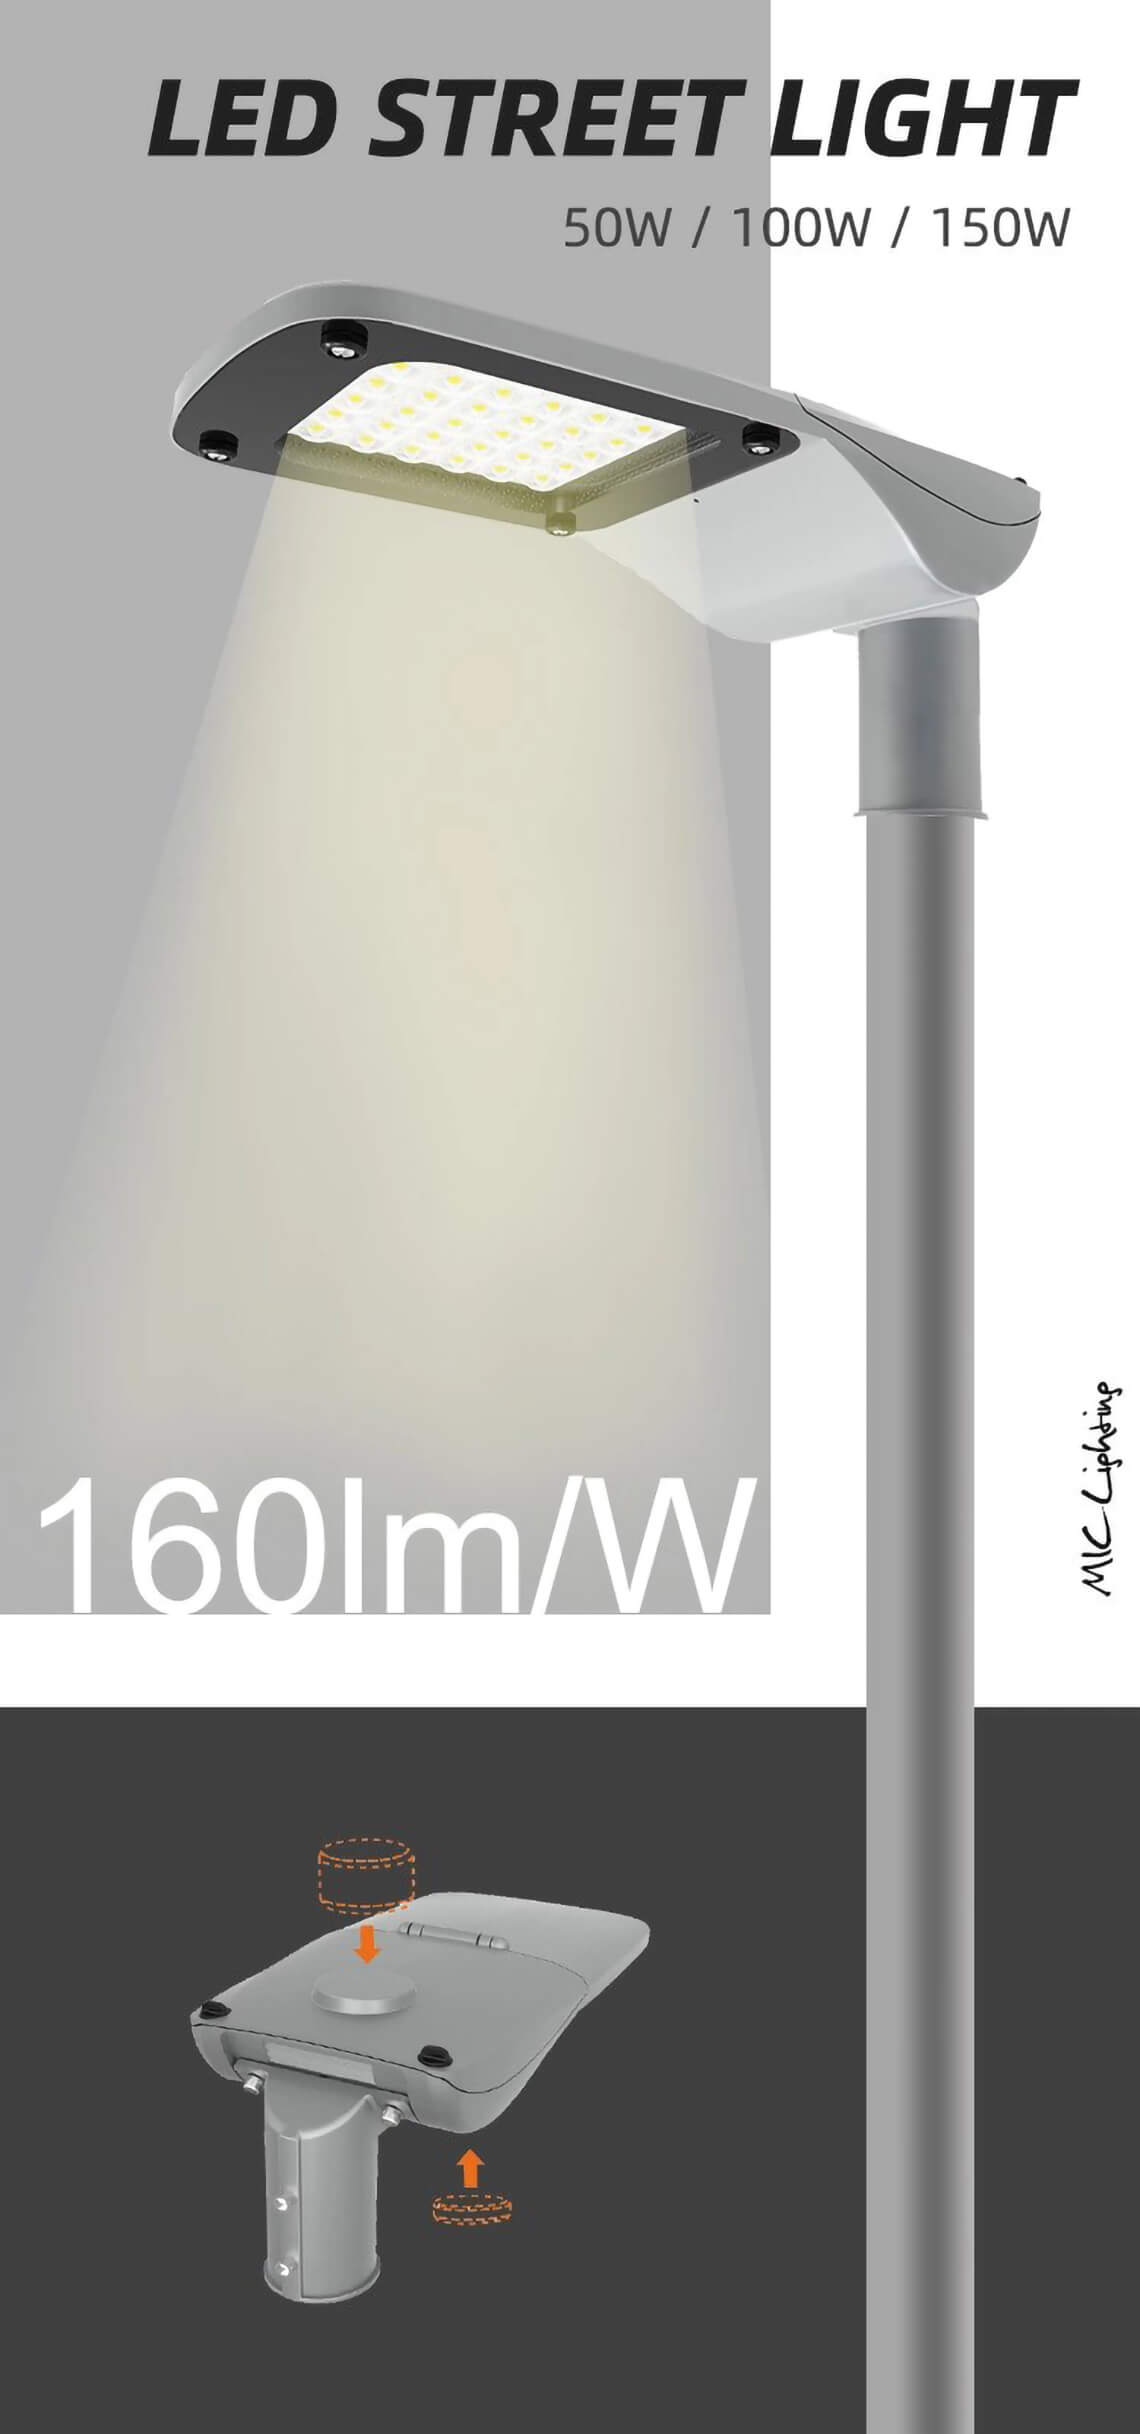 A Series 150w LED